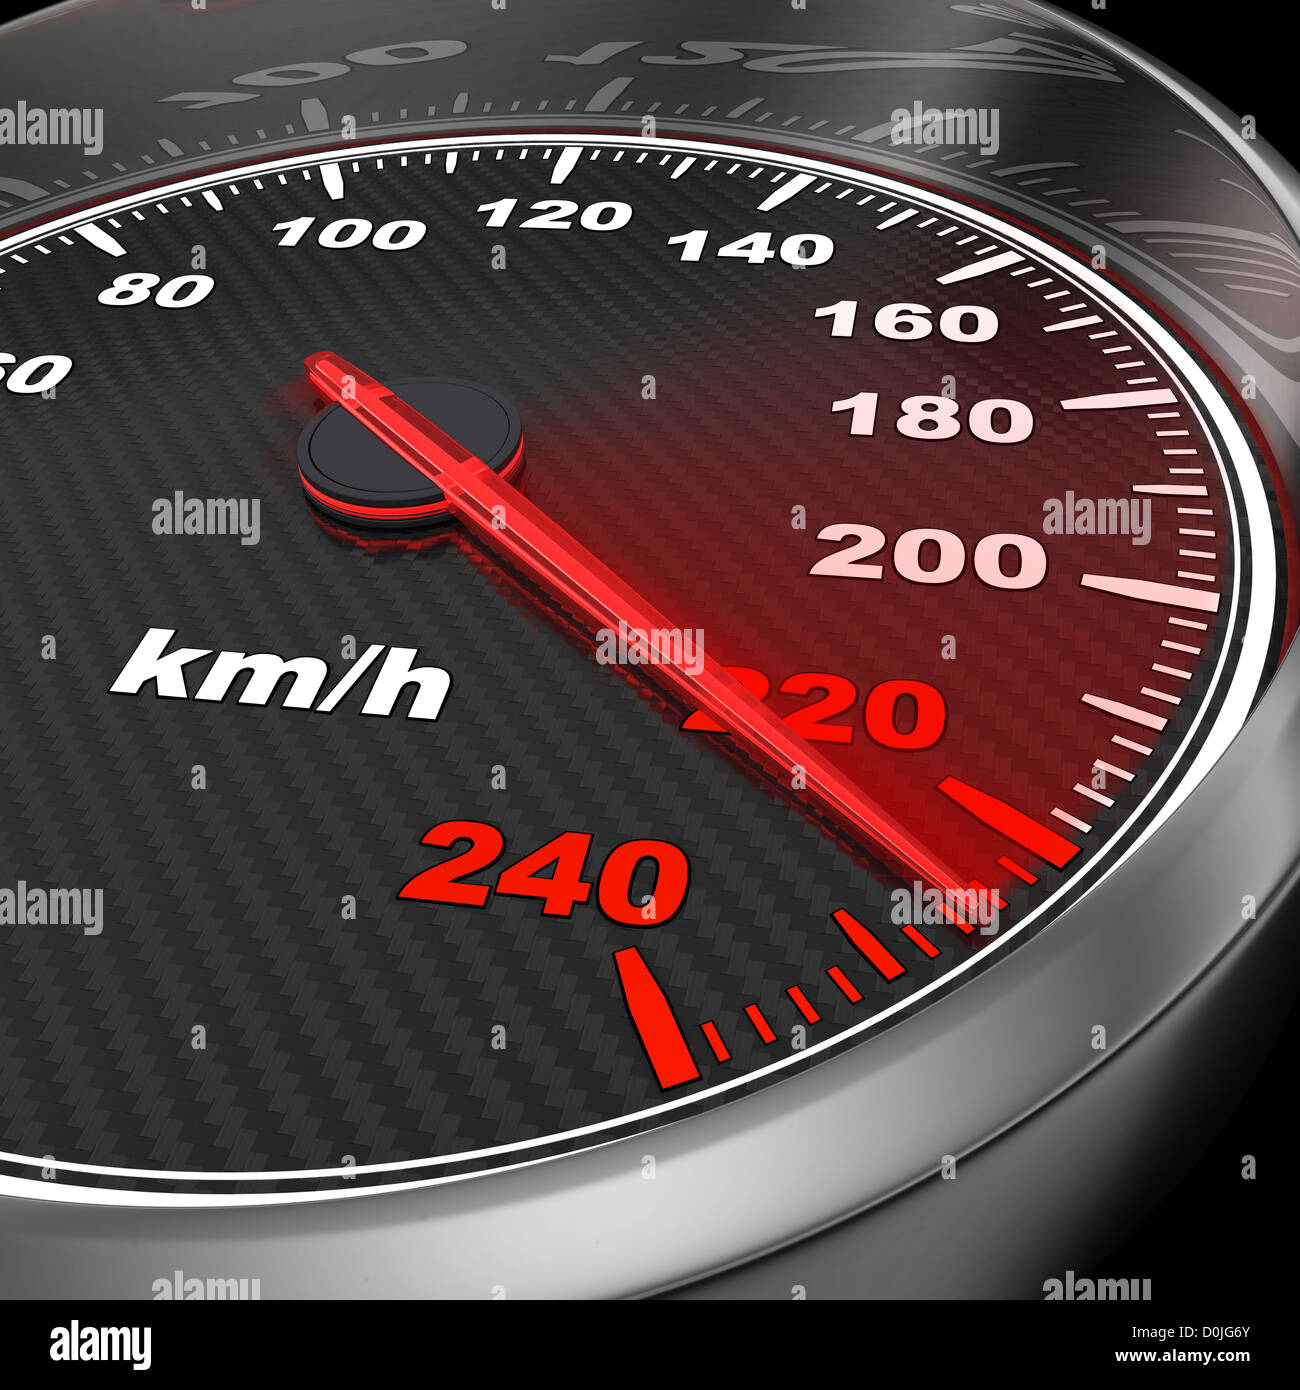 Speedometer Live Wallpaper | Speedometer Wallpaper for Android - Download |  Cafe Bazaar